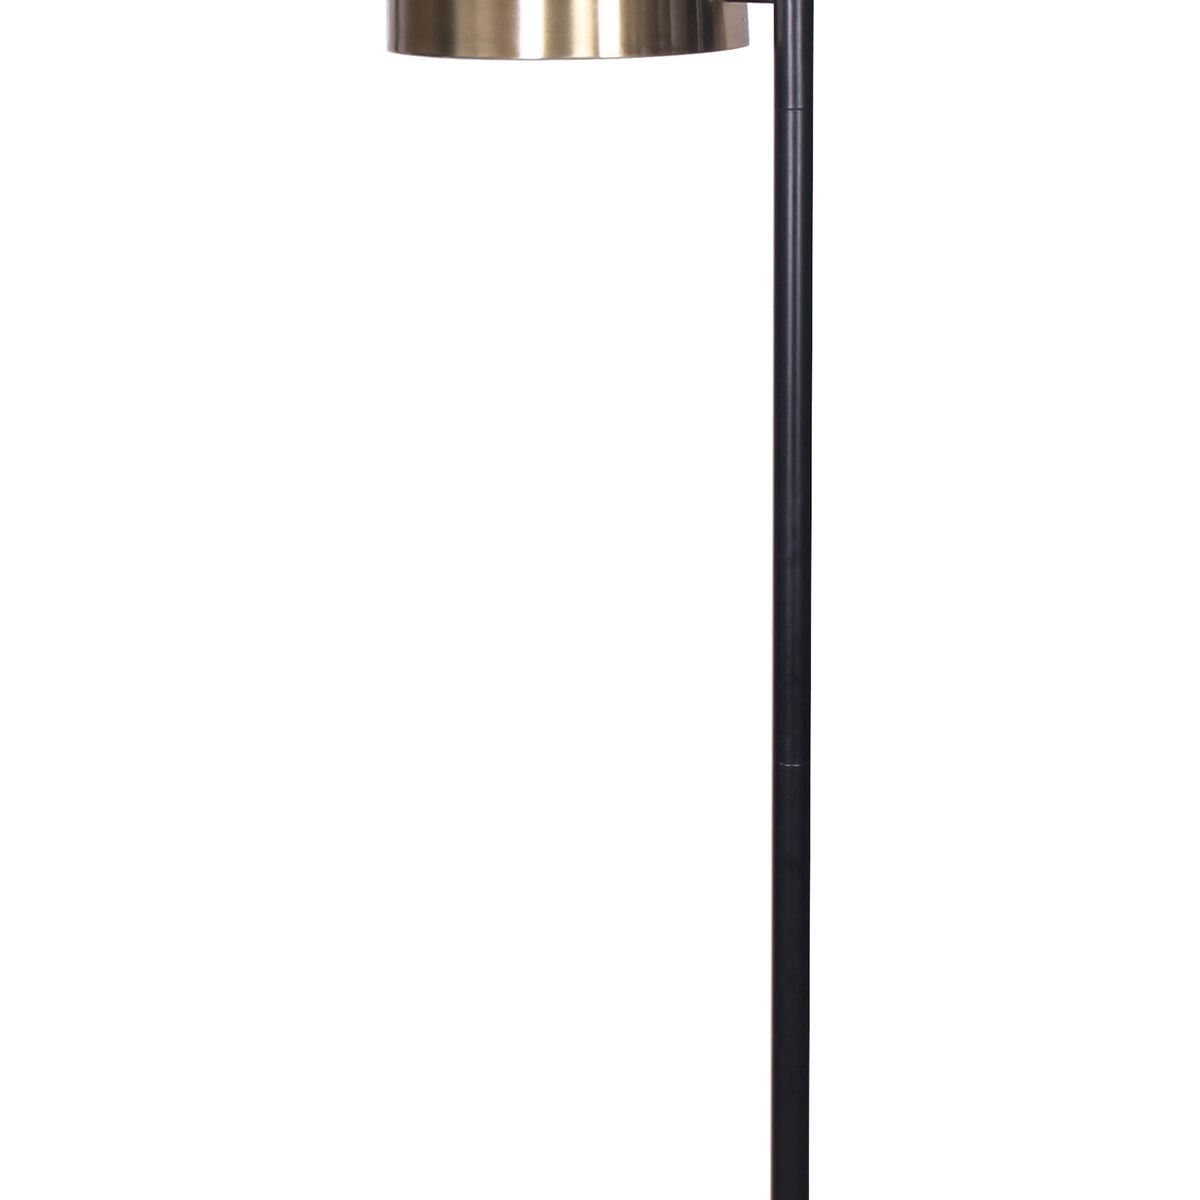 Luce 61" 3-Light Floor Lamp